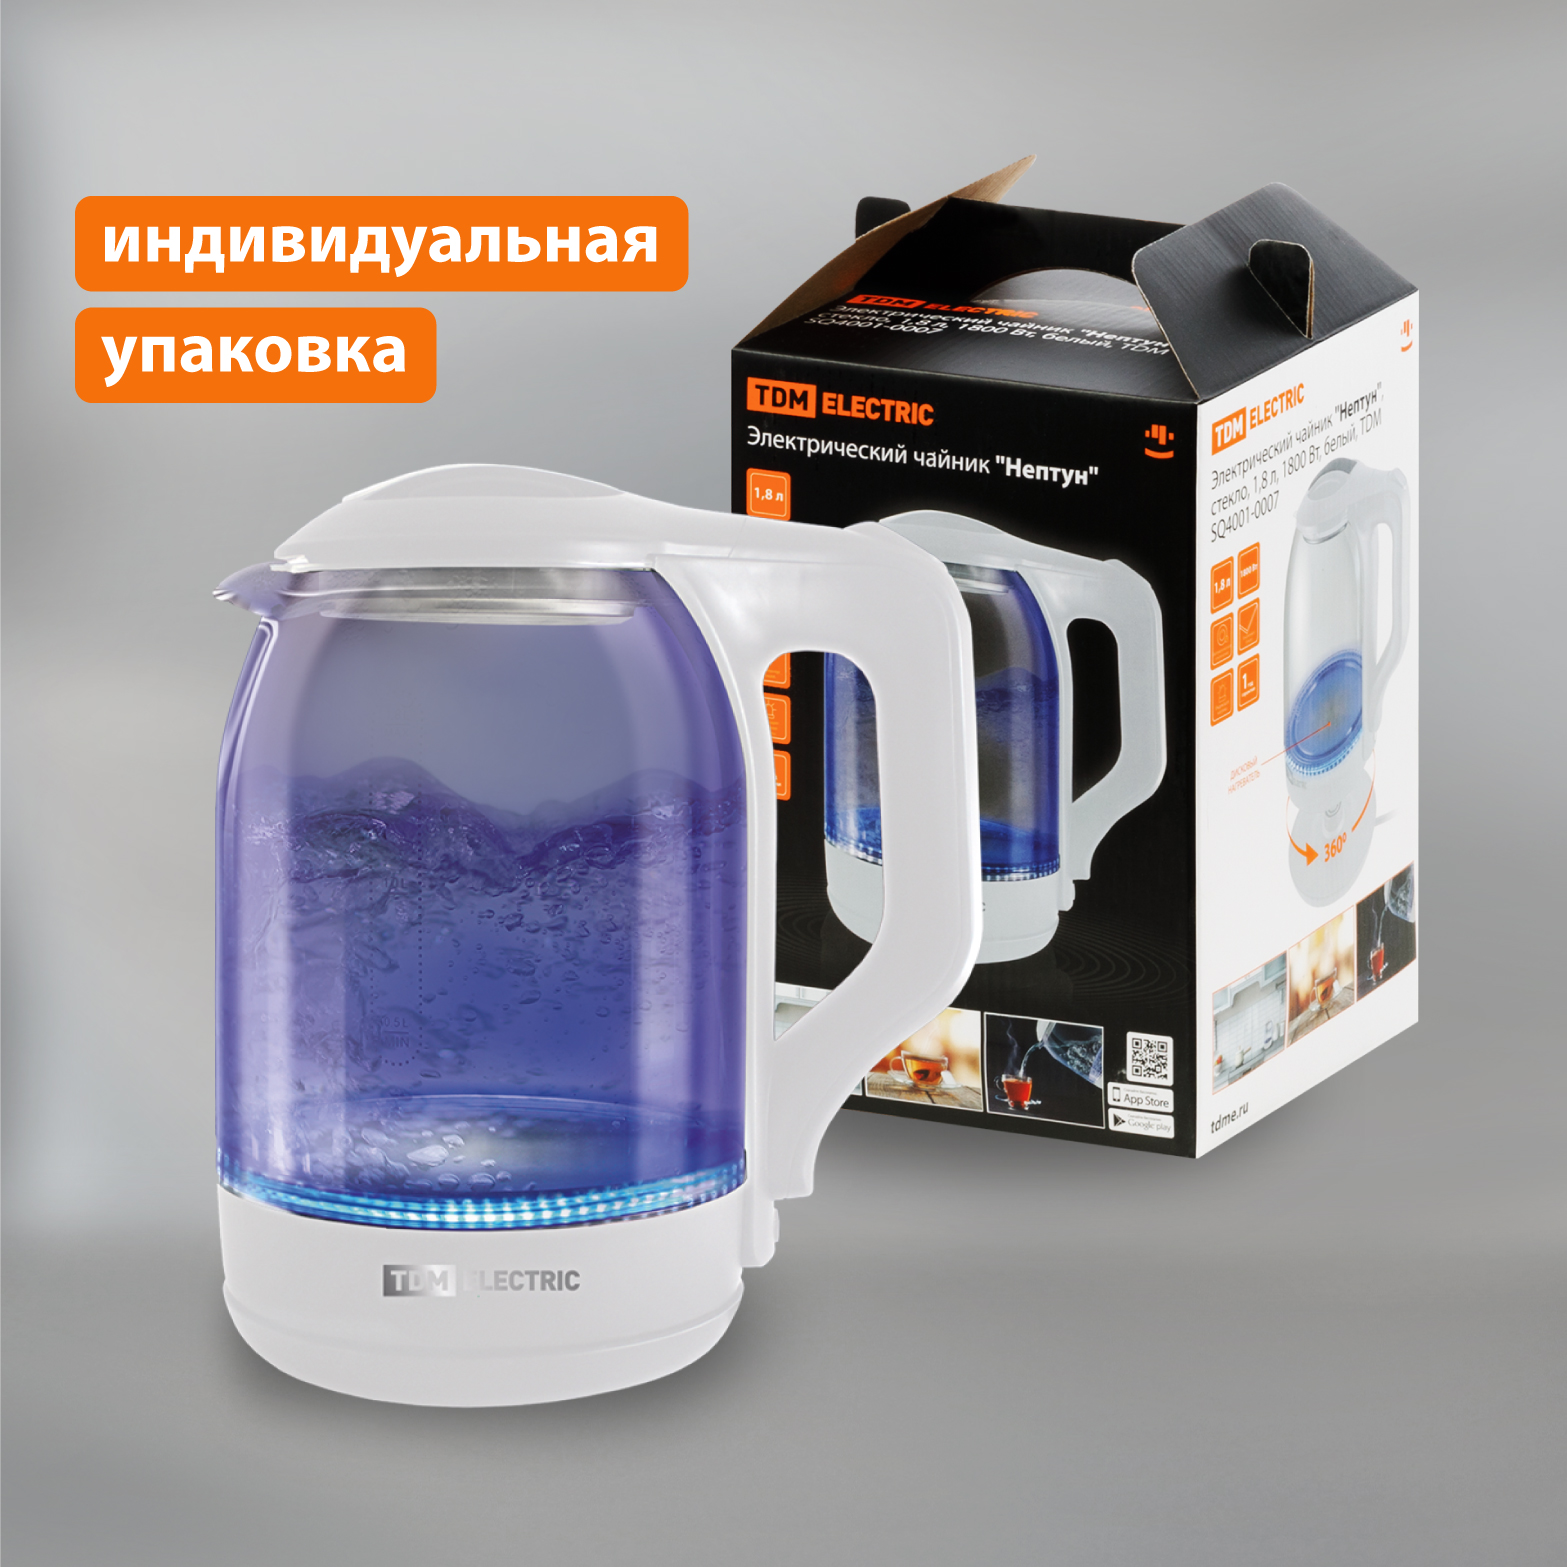 Чайник электрический TDM ELECTRIC SQ4001-0007 1.8 л белый чайник электрический tdm electric гермес sq4001 0002 1 8 л серебристый